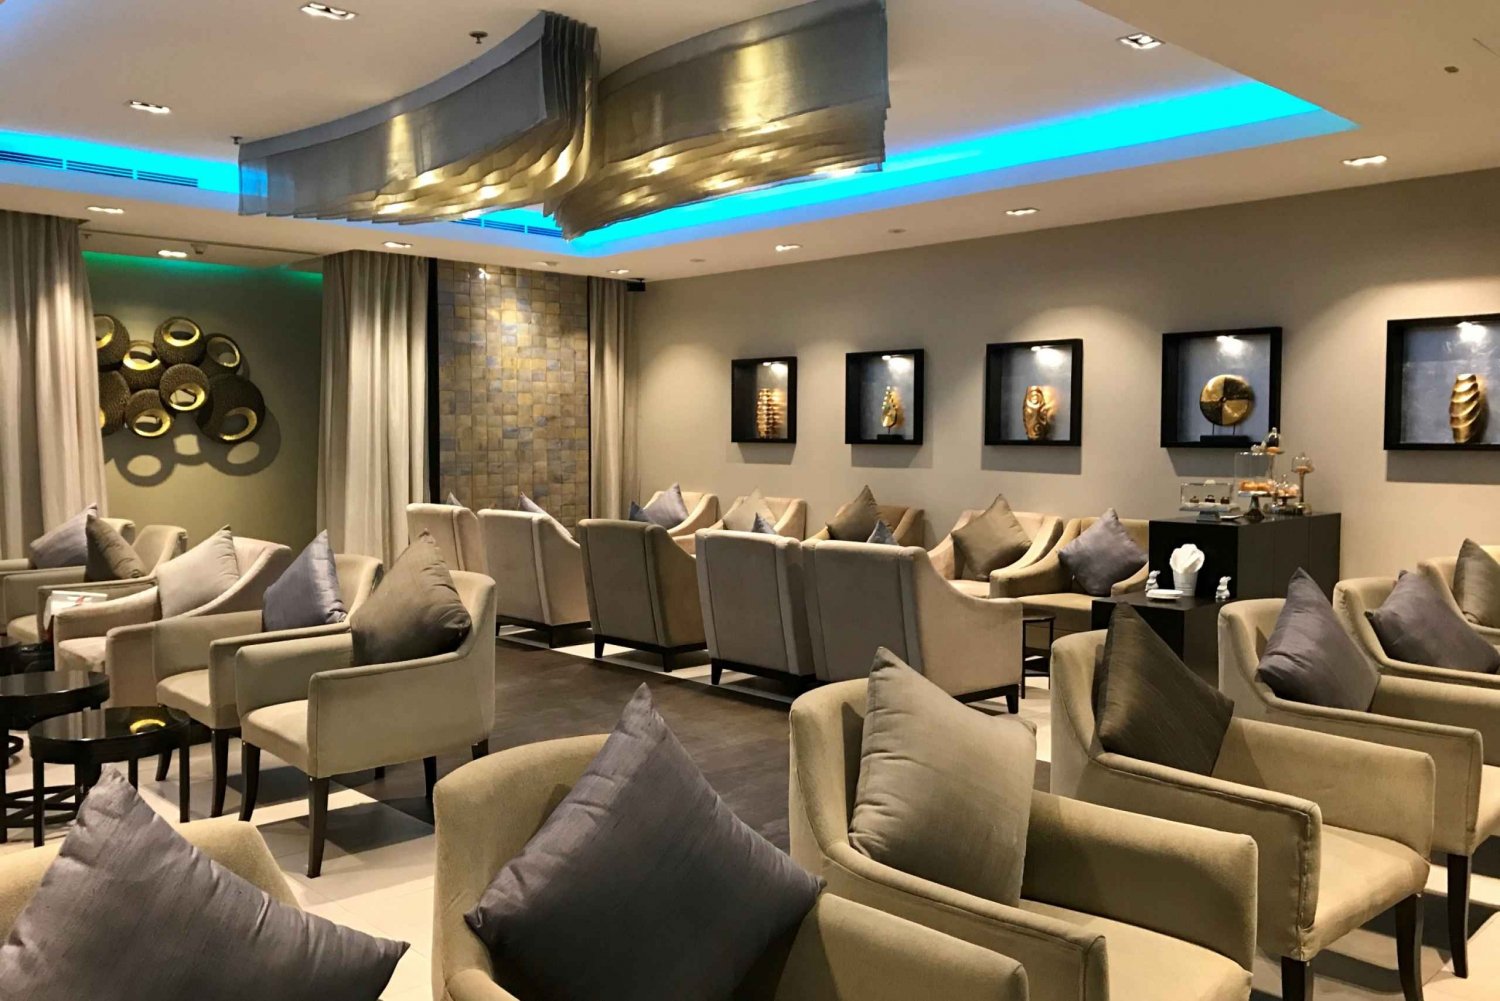 Aeroporto BKK Suvarnabhumi: Lounge de primeira classe da Oman Air